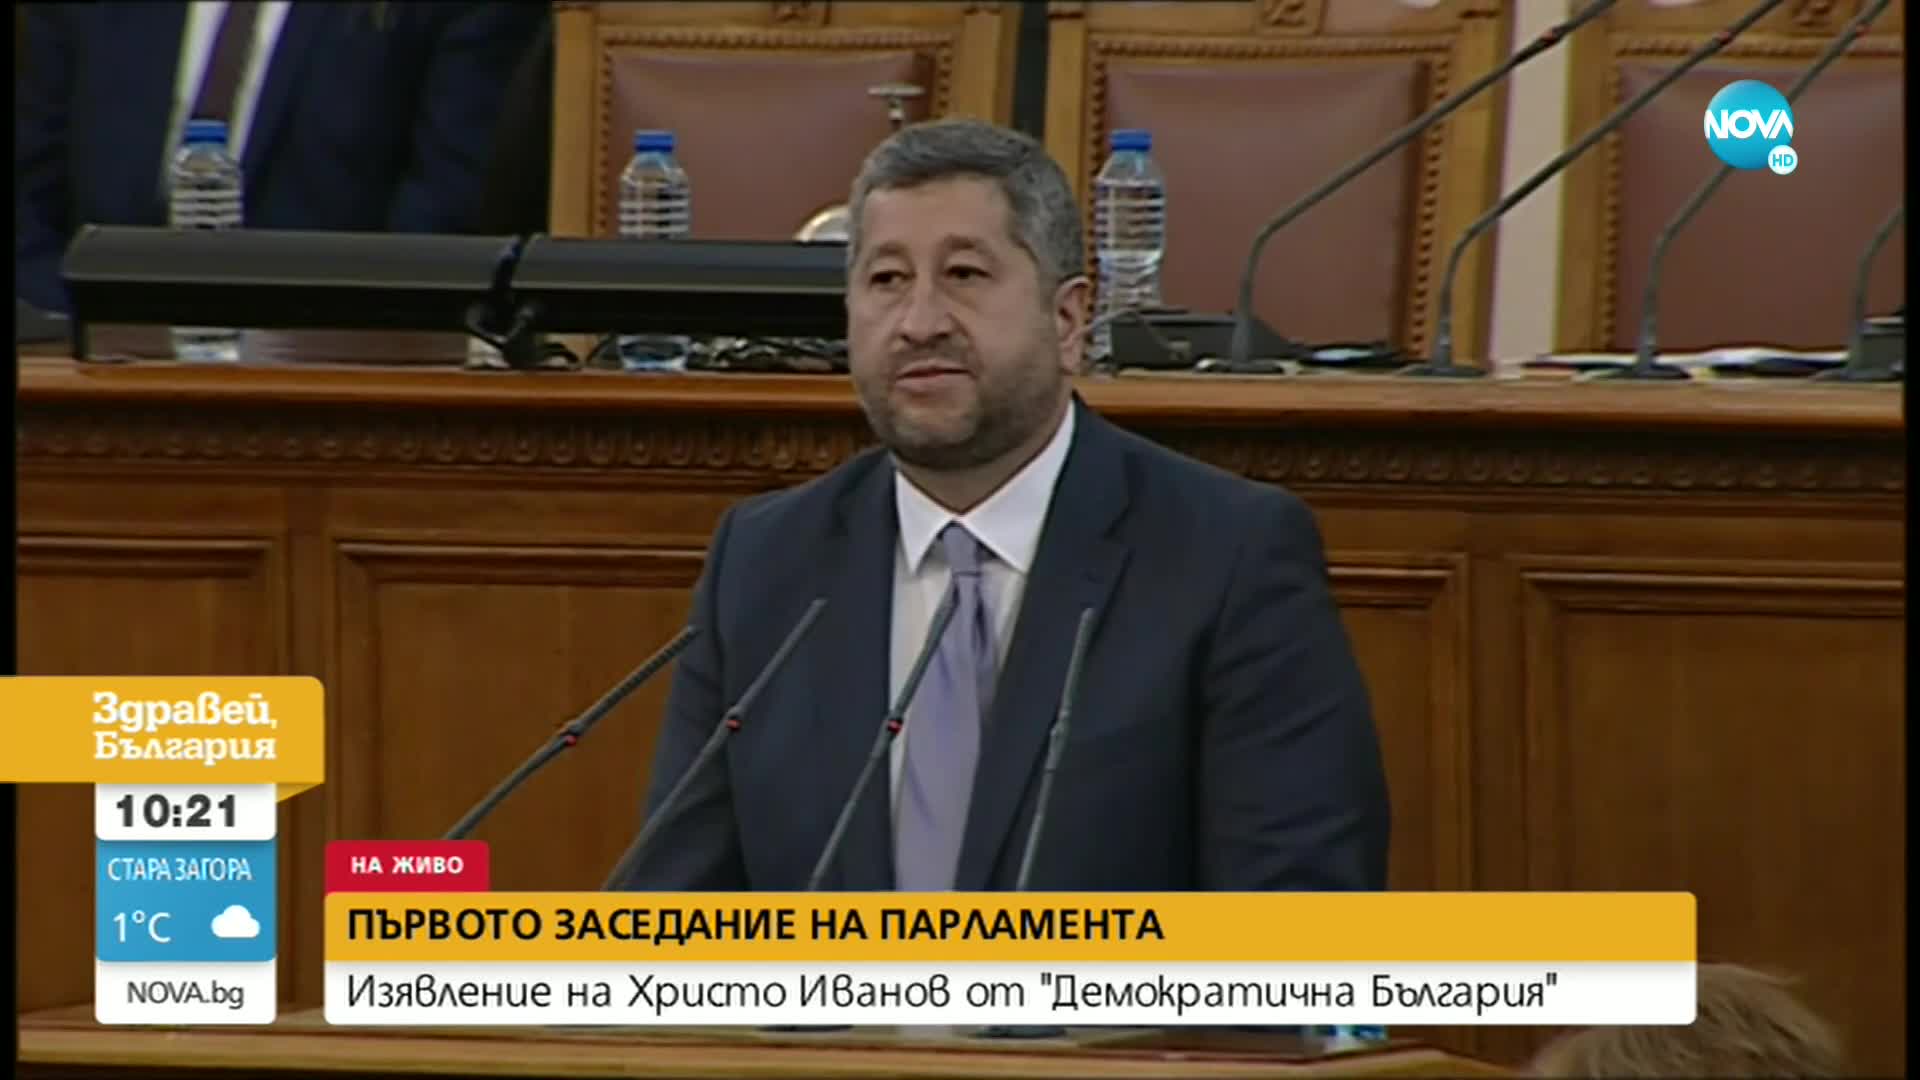 Христо Иванов: Трябва да дадем сигурност, че законът не е само на хартия